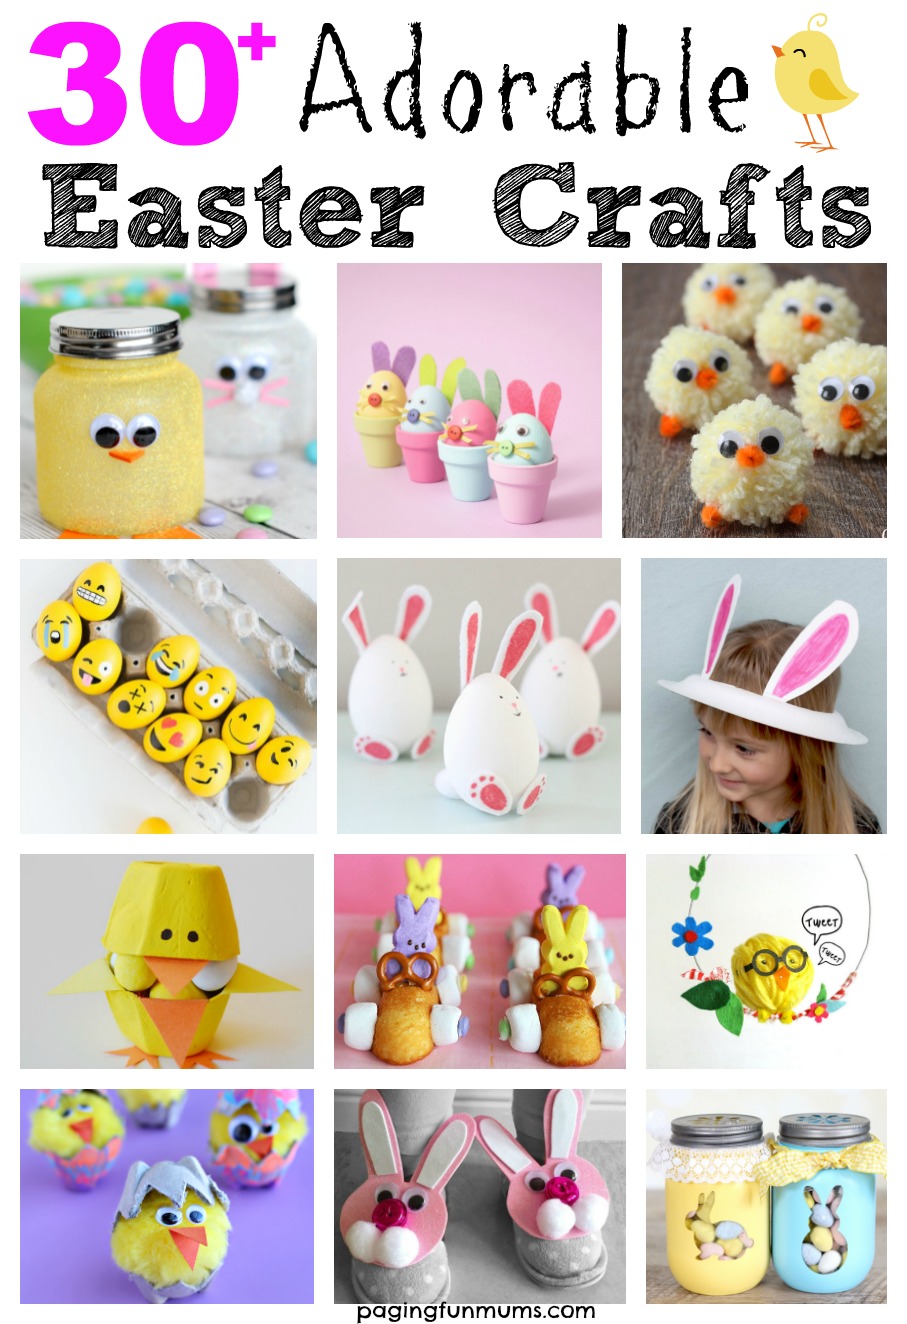 diy crafts for kids easter